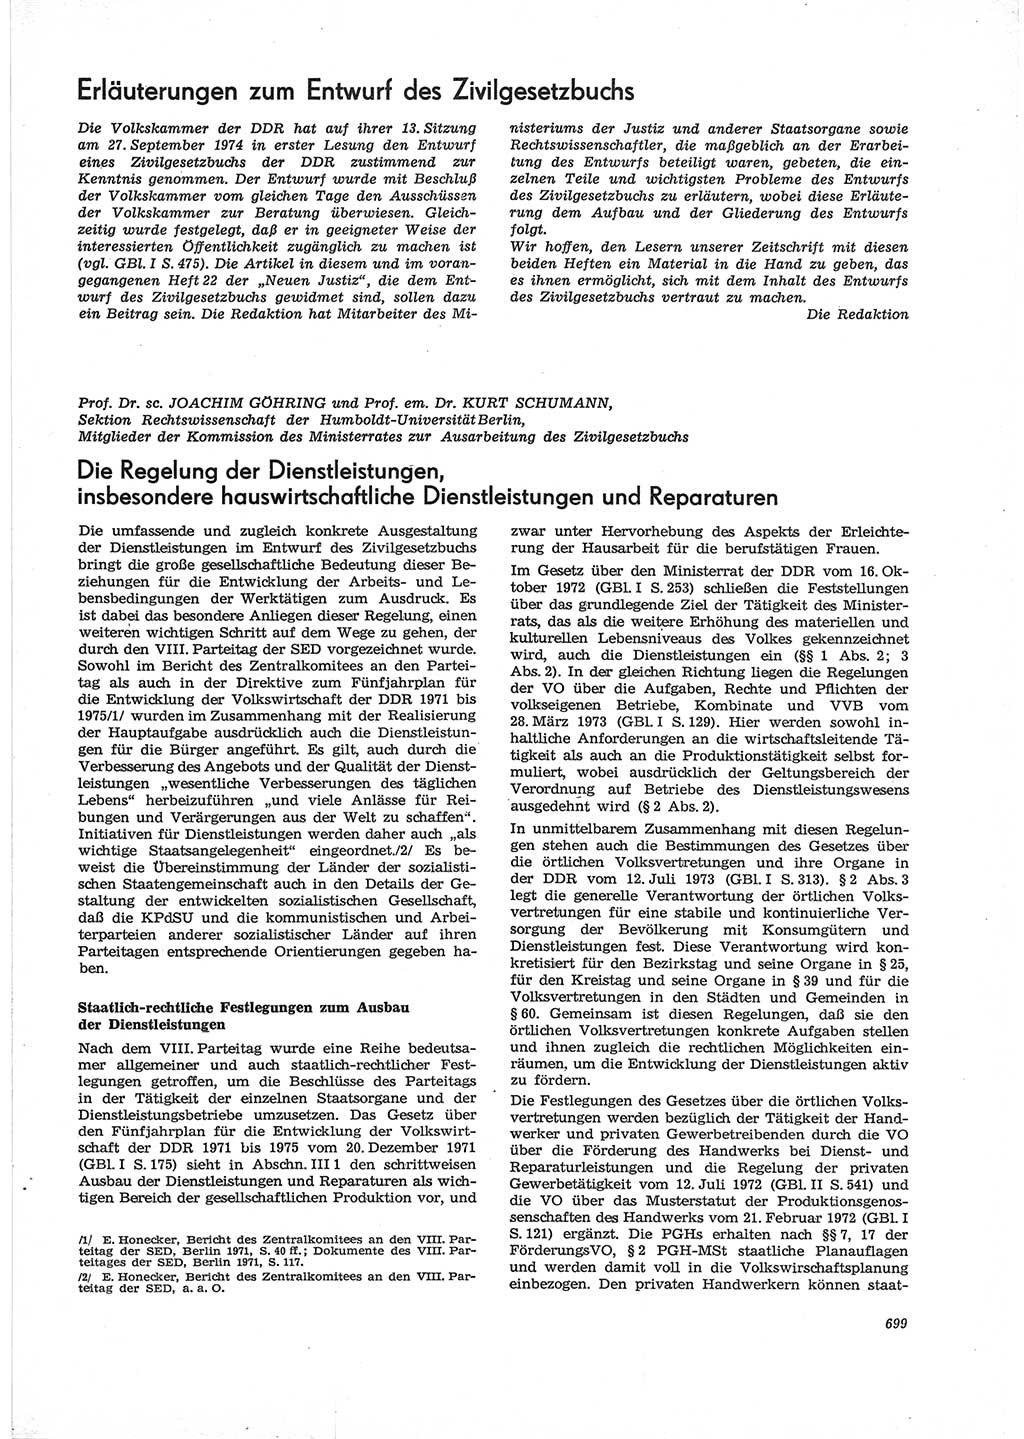 Neue Justiz (NJ), Zeitschrift für Recht und Rechtswissenschaft [Deutsche Demokratische Republik (DDR)], 28. Jahrgang 1974, Seite 699 (NJ DDR 1974, S. 699)